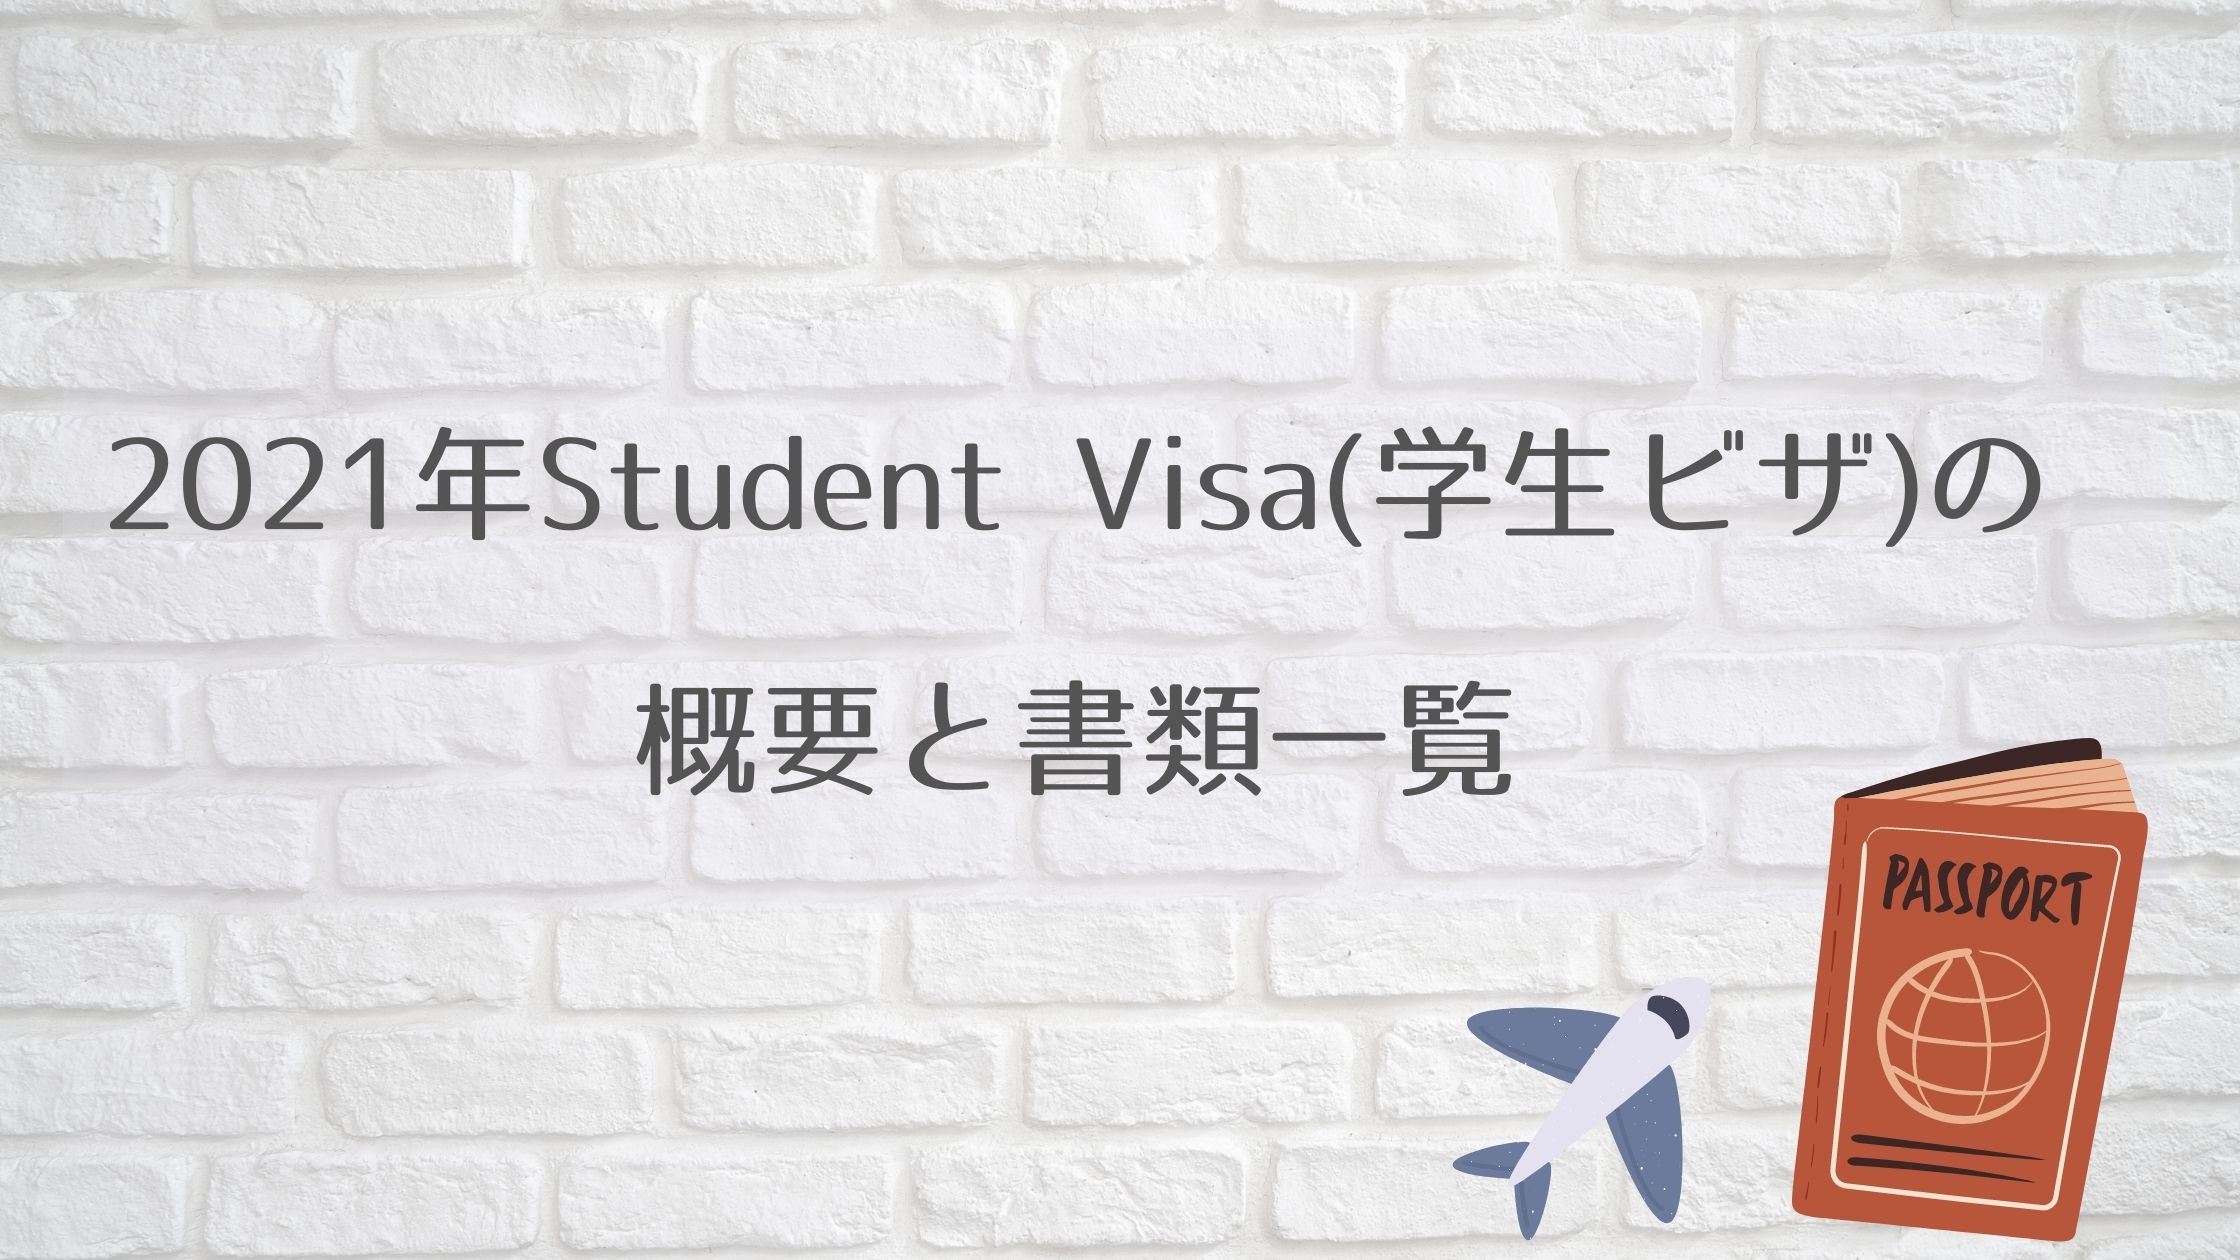 2021 visa